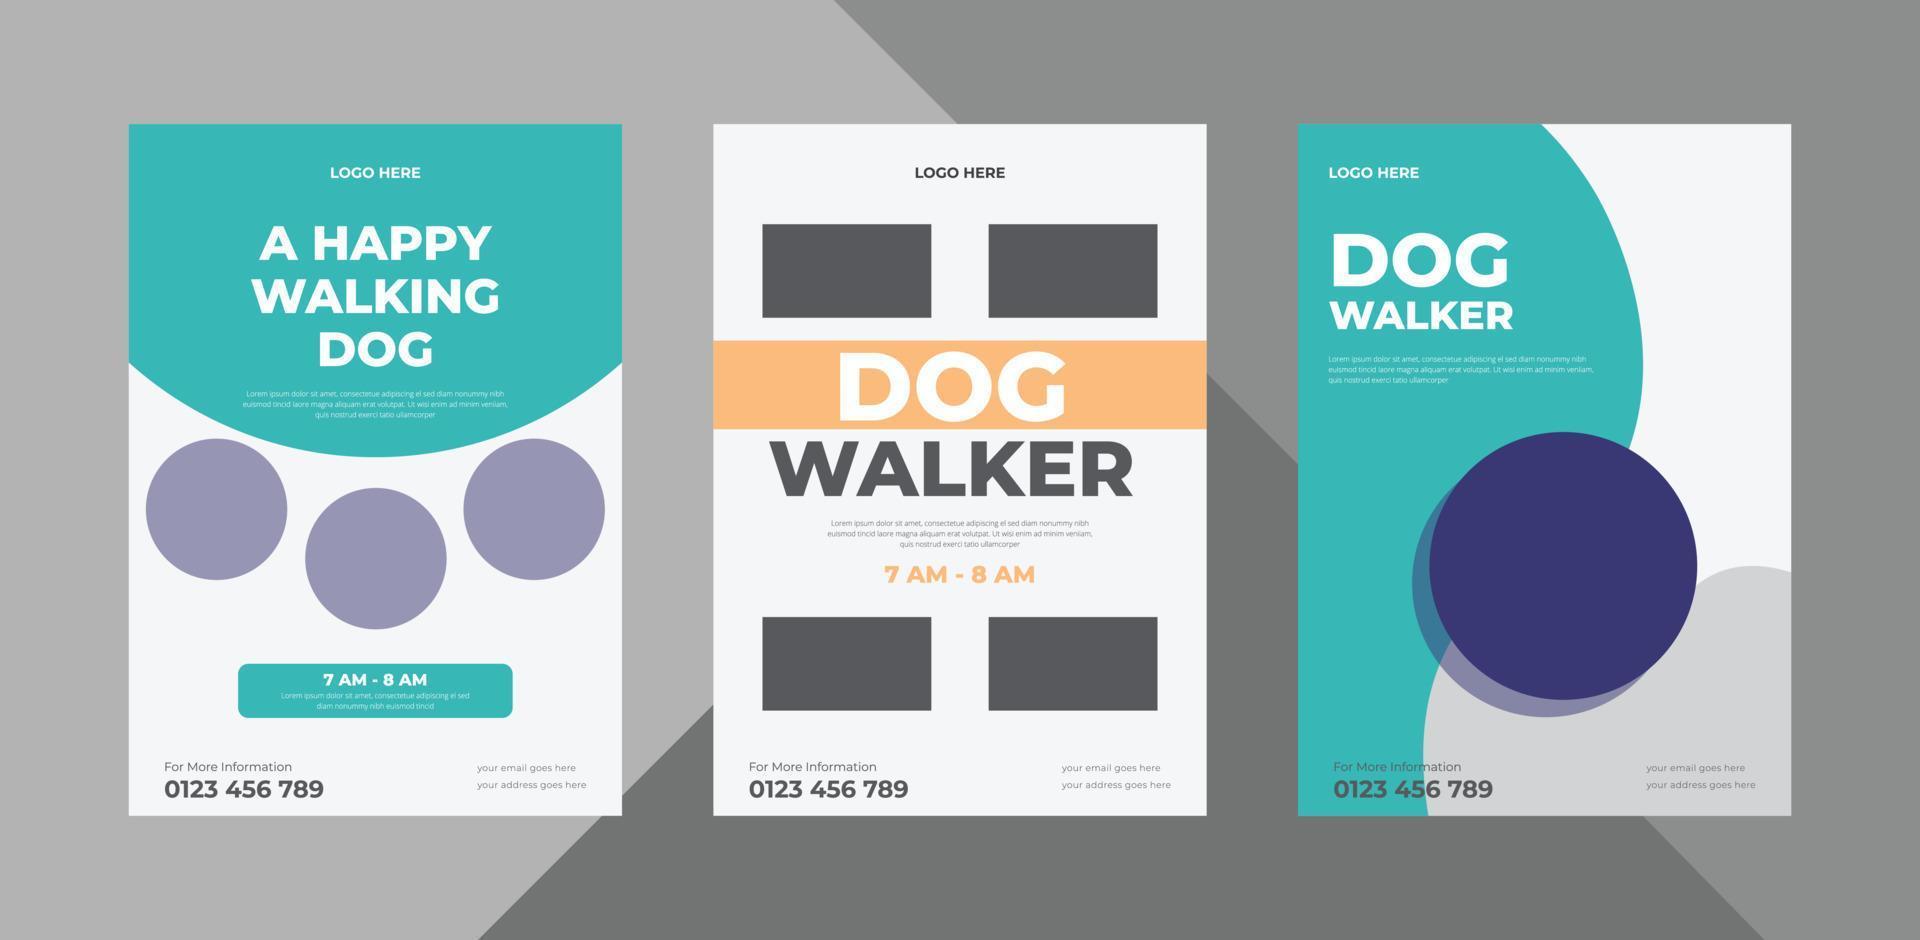 flyerontwerp voor hondenuitlaters. huisdier wandelen service poster folder ontwerpsjabloon. bundel, a4-sjabloon, brochureontwerp, omslag, flyer, poster, drukklaar vector